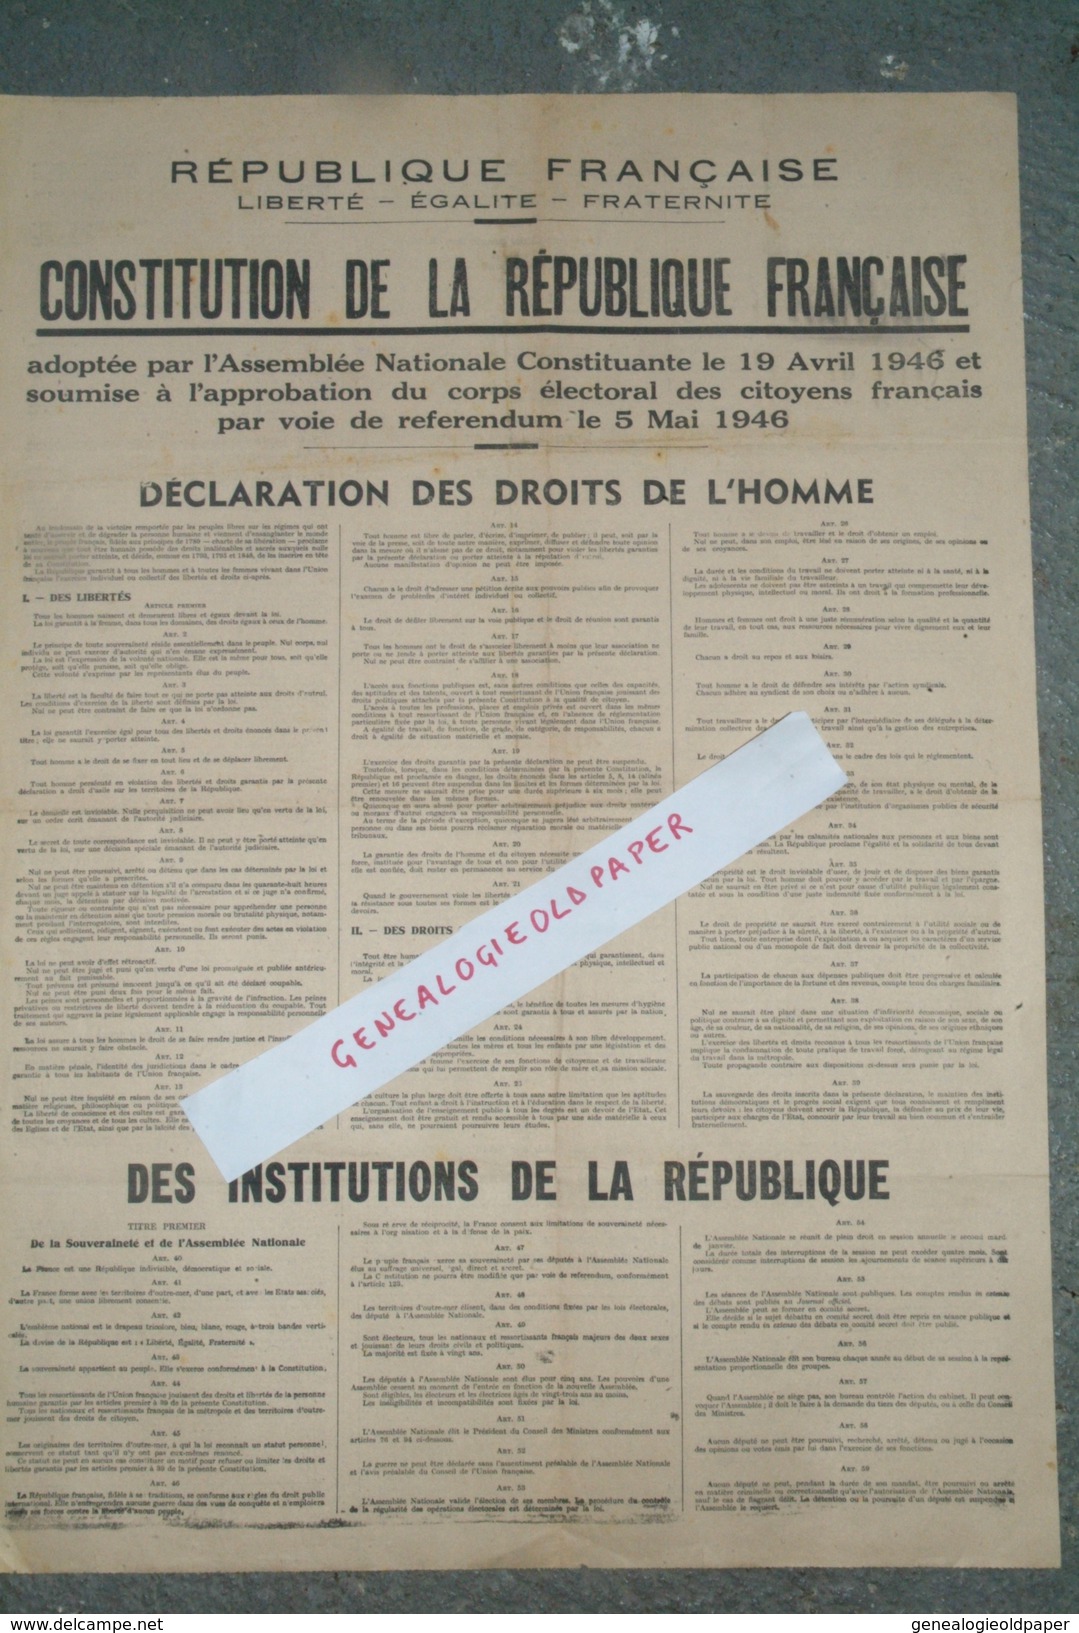 POLITIQUE - AFFICHE CONSTITUTION REPUBLIQUE FRANCAISE -ASSEMBLEE NATIONALE 19 AVRIL 1946- REFERENDUM 5 MAI 1946-DROITS - Afiches